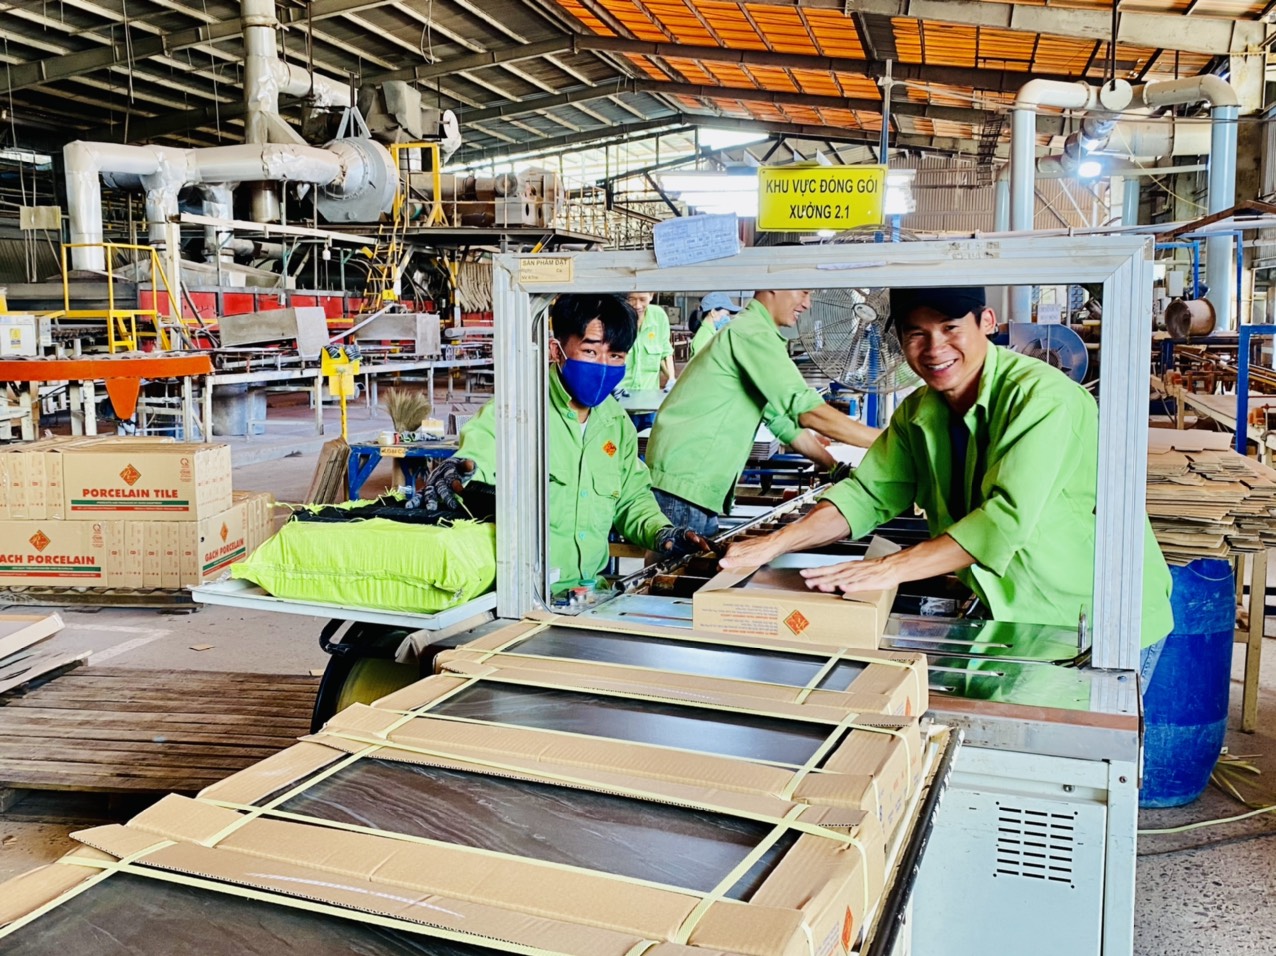 Hầu hết các DN đều đánh giá cao sự cải thiện trong công tác phục vụ DN của chính quyền địa phương tỉnh Bà Rịa-Vũng Tàu. Trong ảnh: Sản xuất gạch men tại Công ty TNHH Top Tiltile (TX. Phú Mỹ).